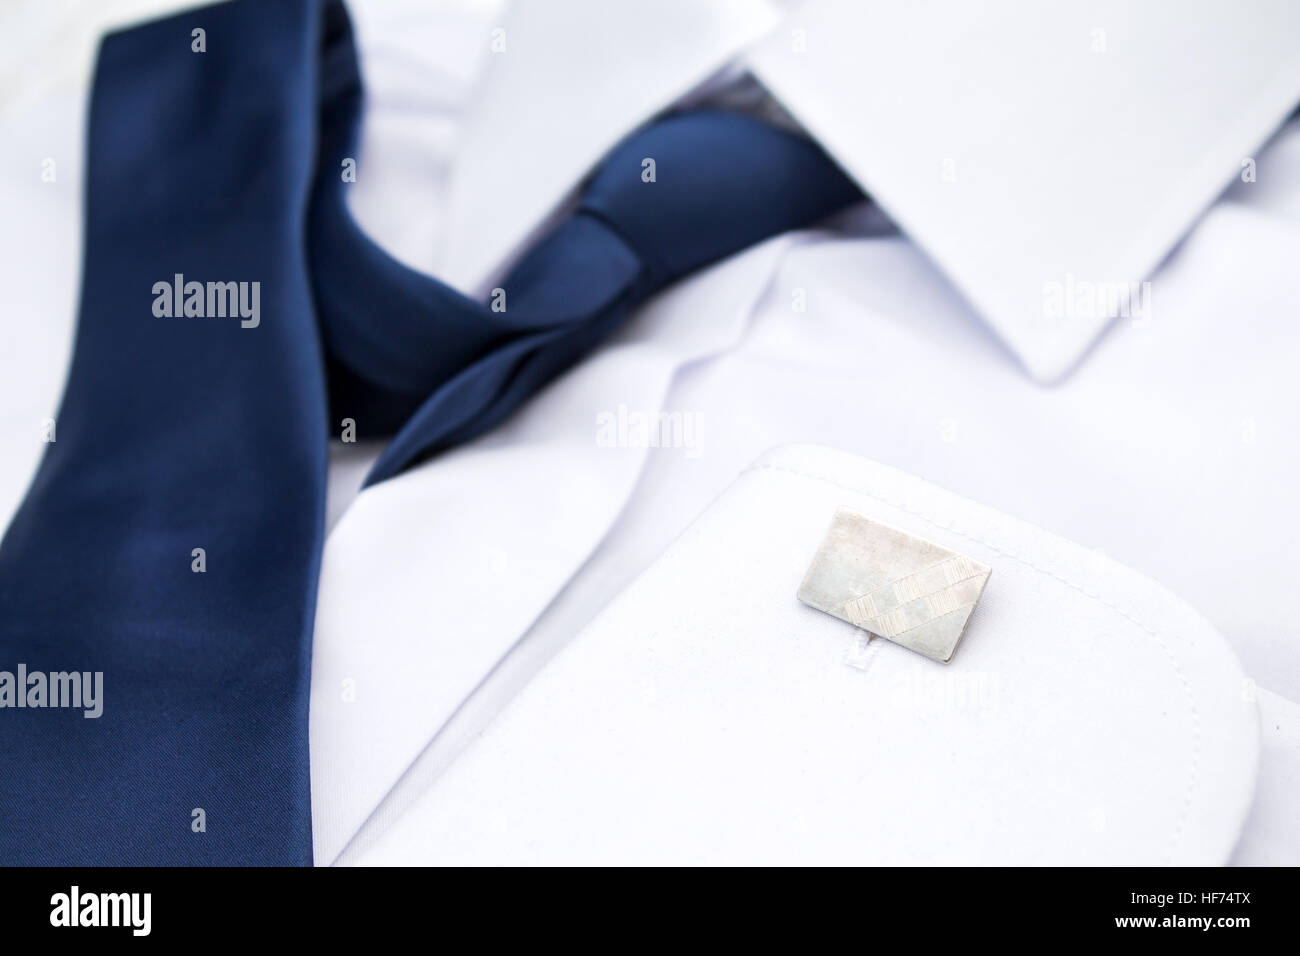 L'uomo la camicia bianca con cravatta blu e gemelli Foto Stock